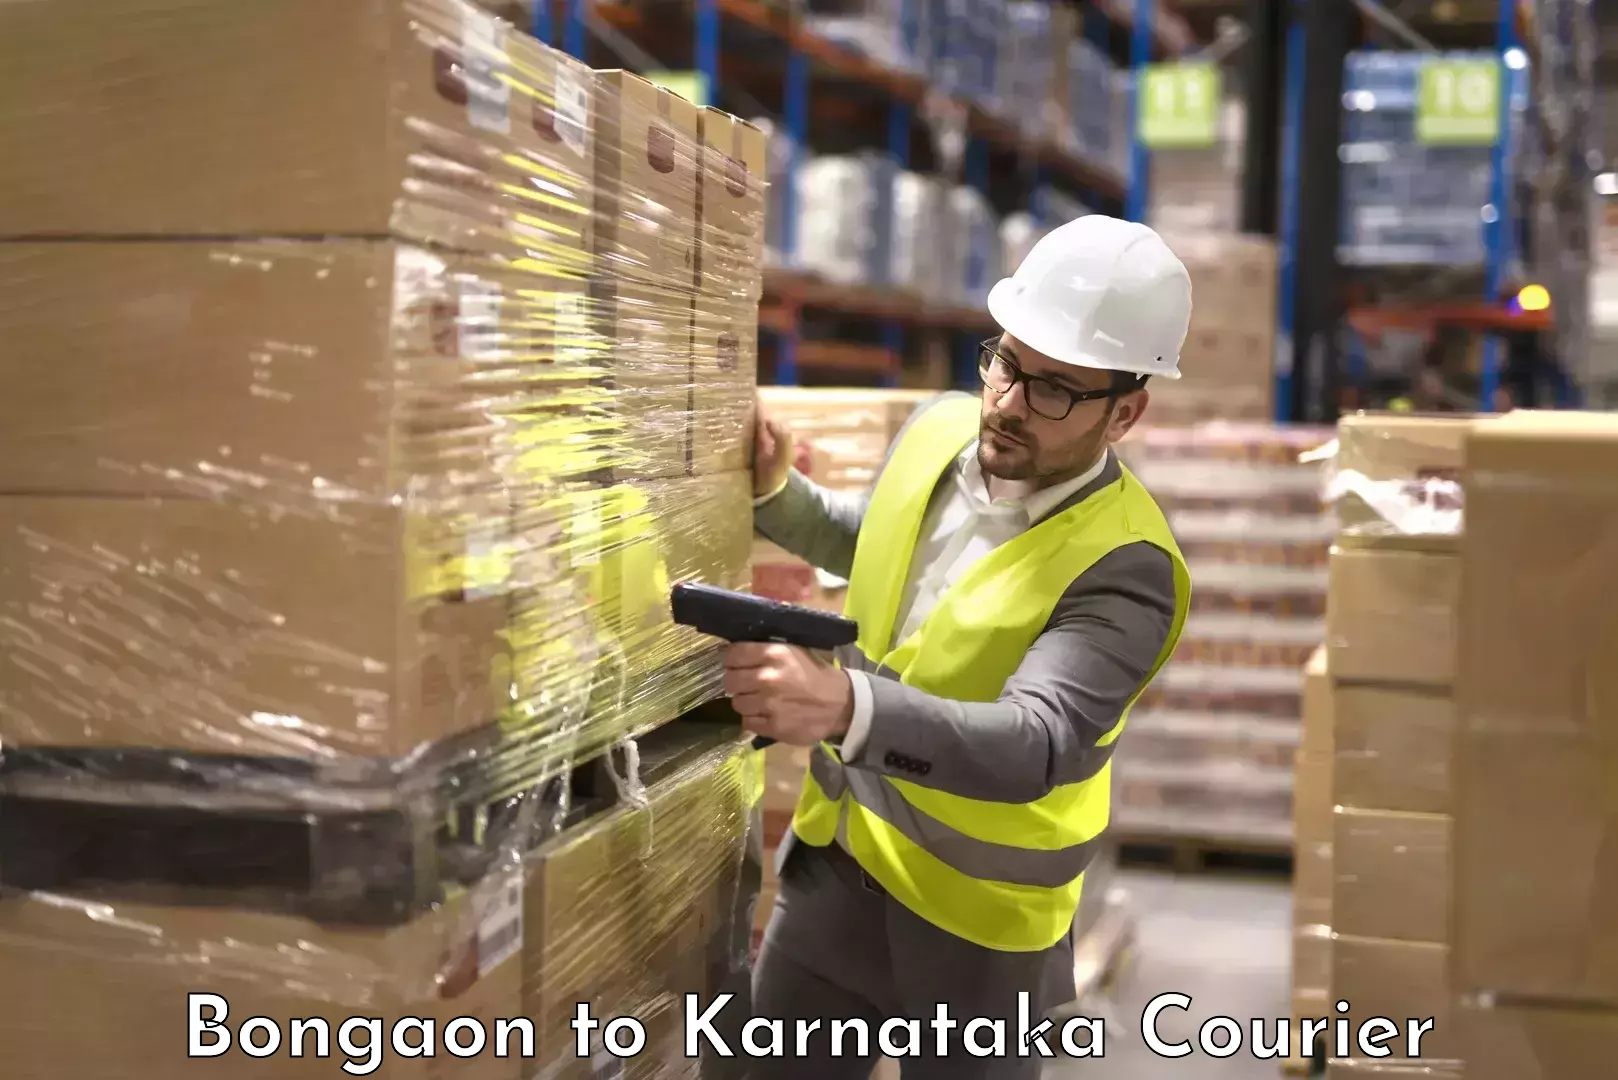 Baggage shipping experts Bongaon to Bantwal